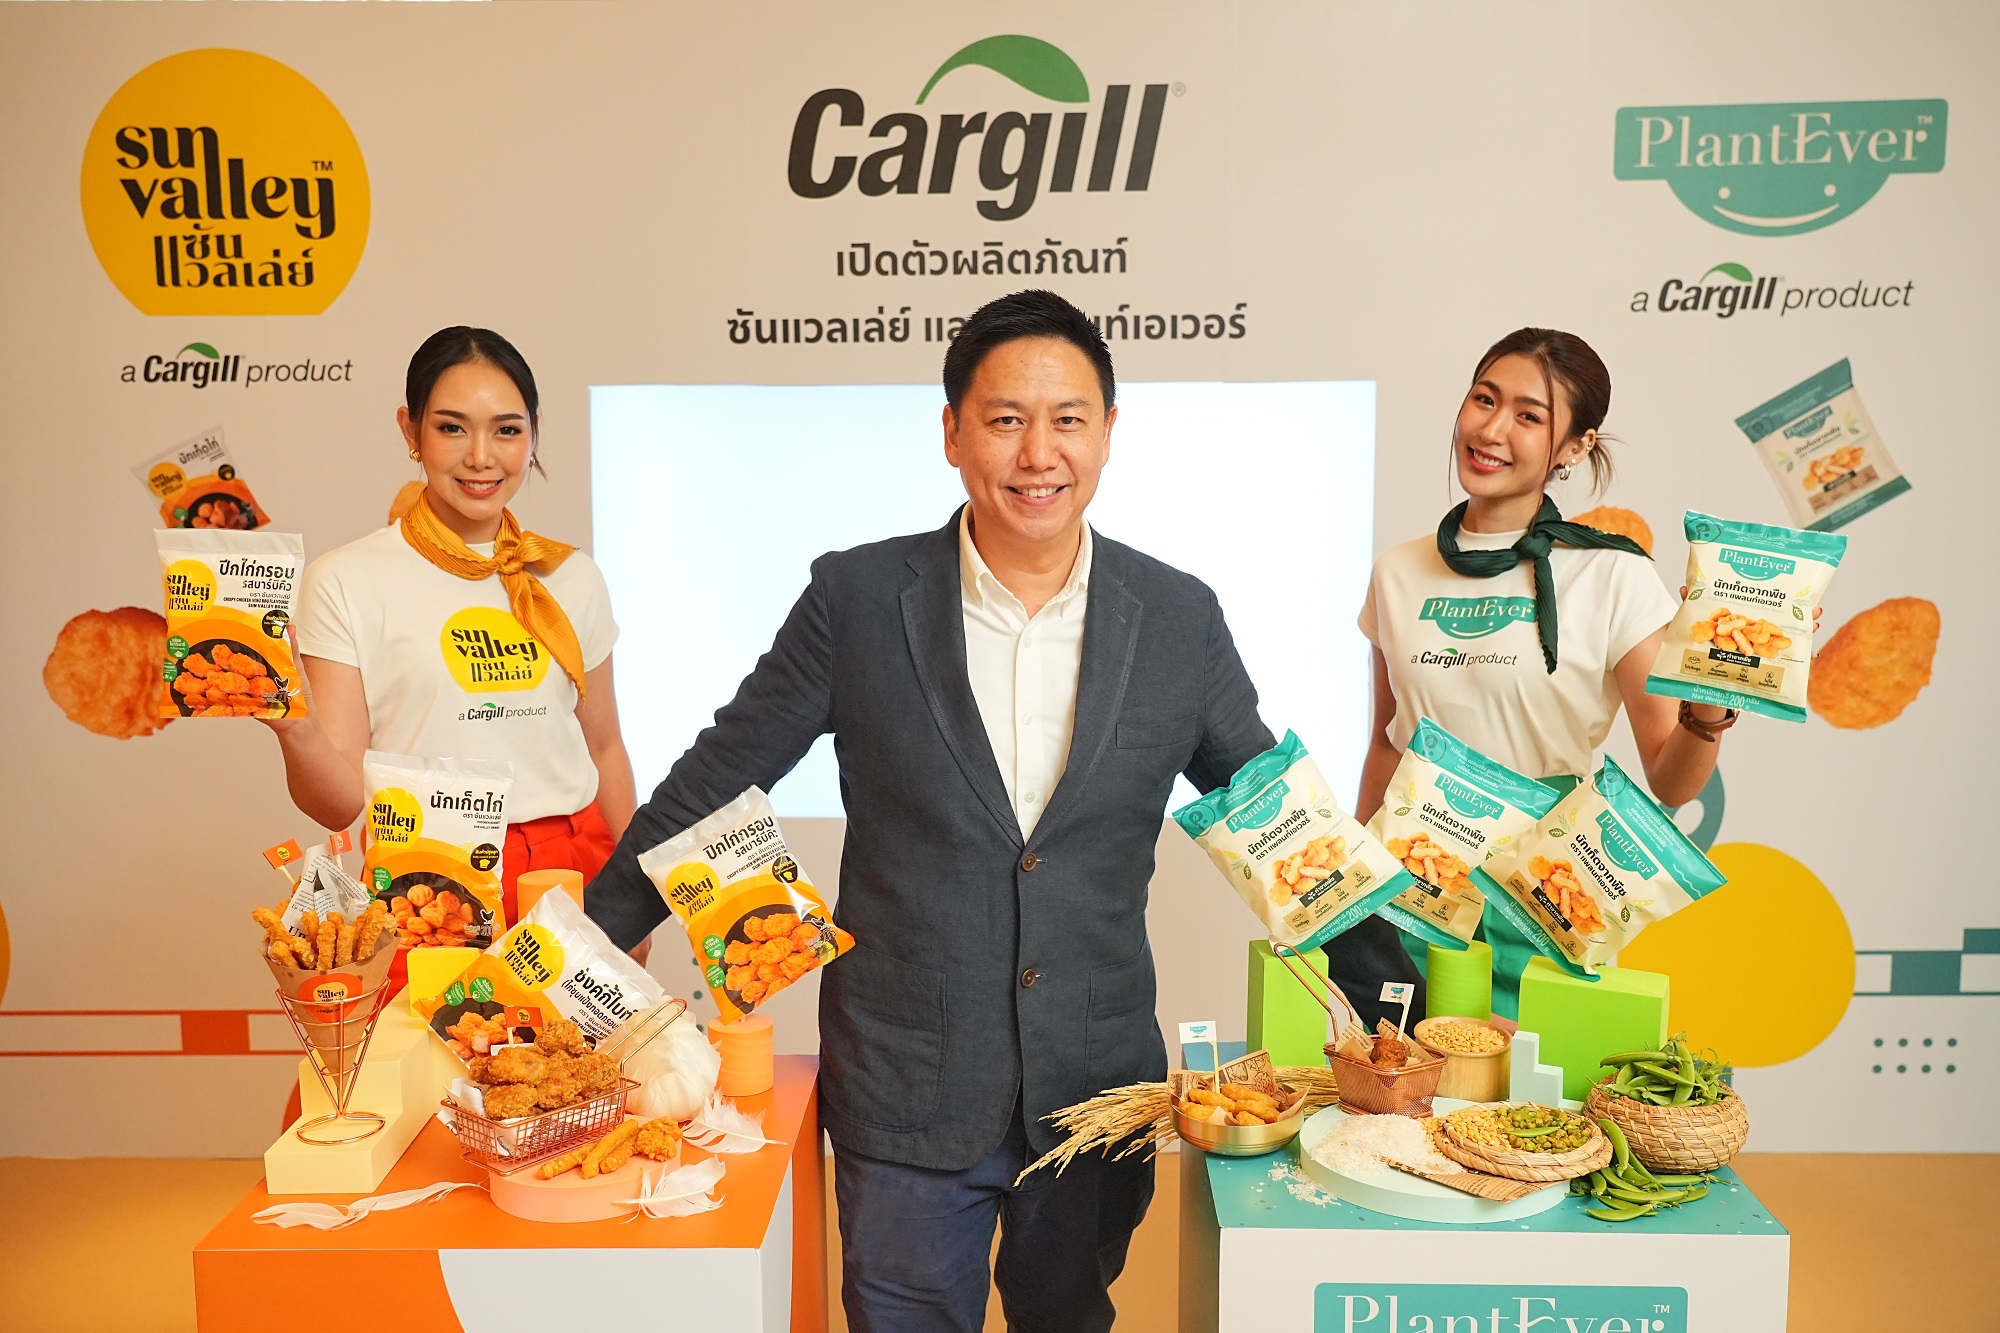 คาร์กิลล์บุกตลาดอาหาร ส่ง 2 แบรนด์ ผลิตภัณฑ์โปรตีน  “Sun Valley” และ “PlantEver” ให้ทางเลือกความอร่อย พร้อมสุขภาพดี